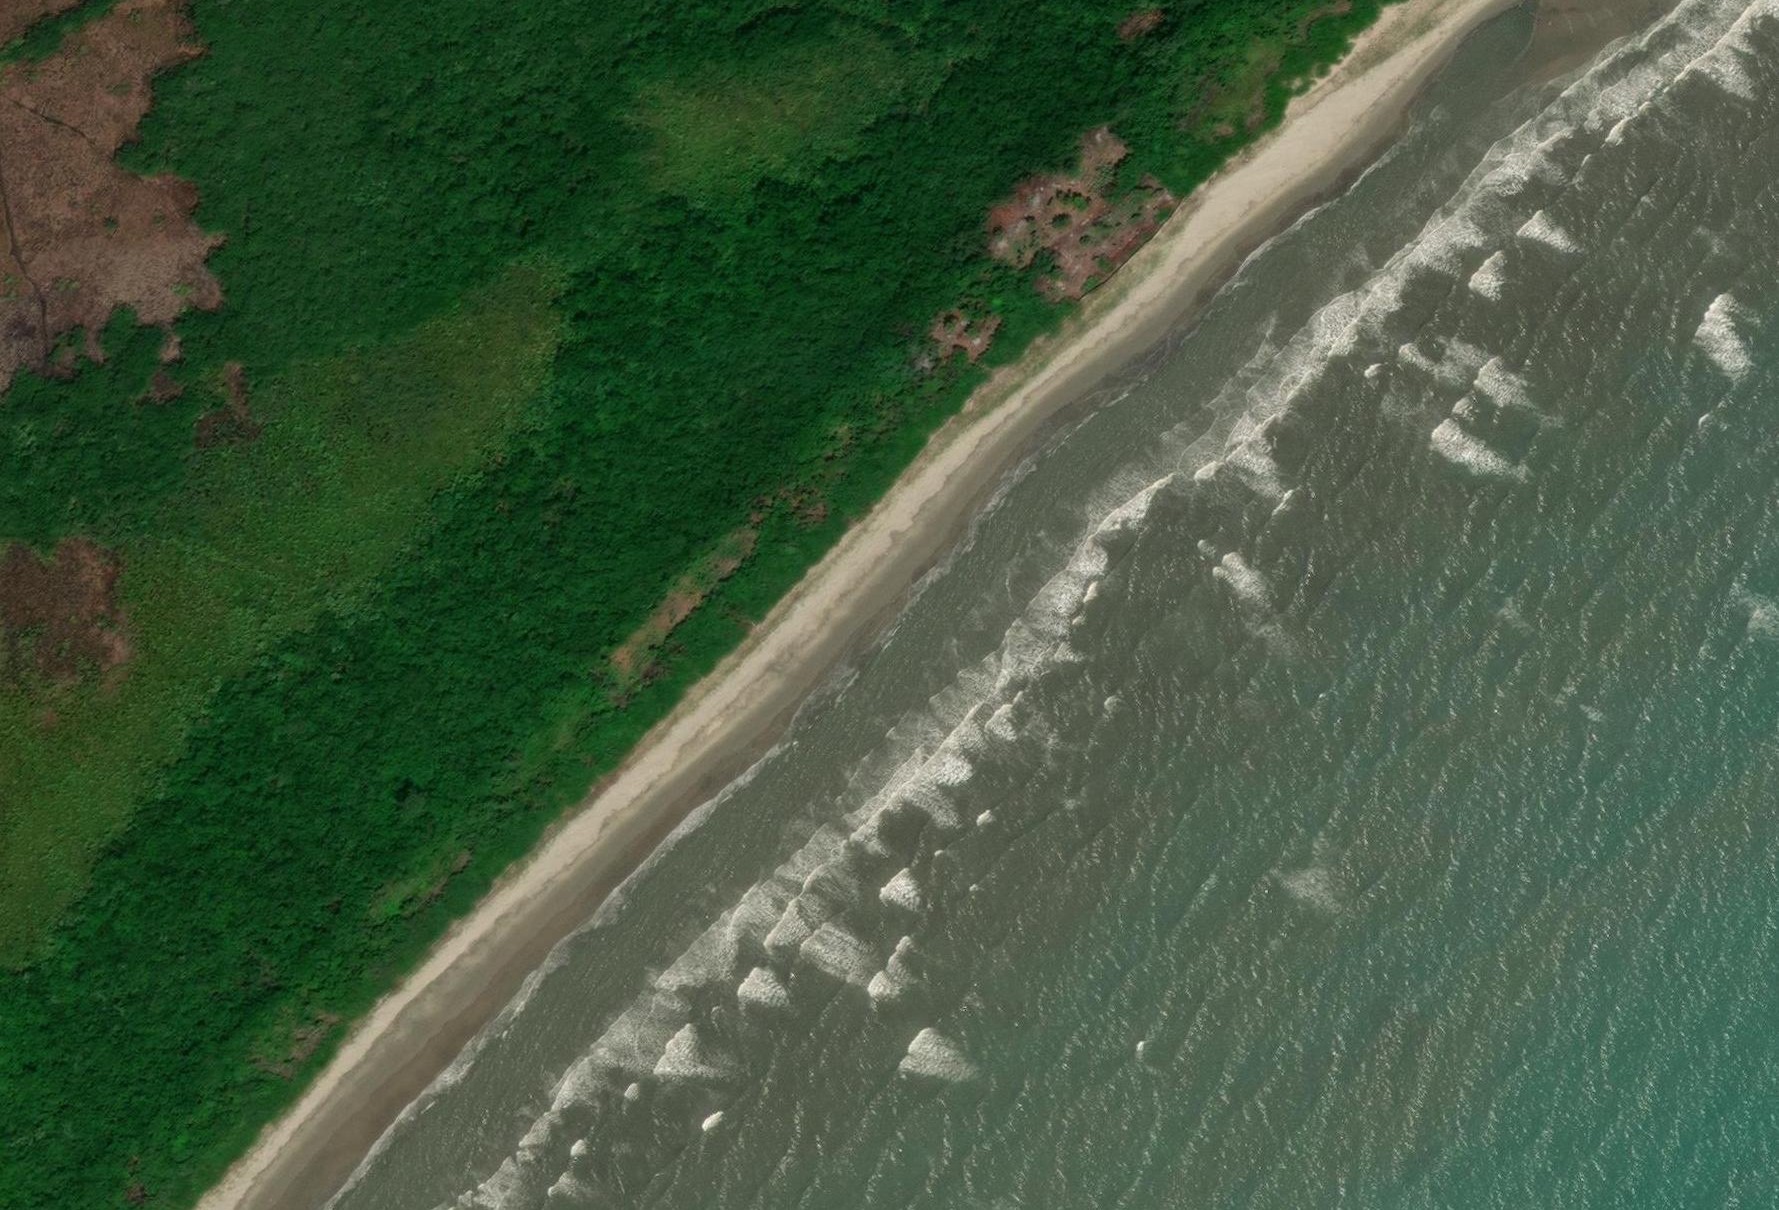  GeoEye卫星拍摄的0.5米海边浪花卫星图